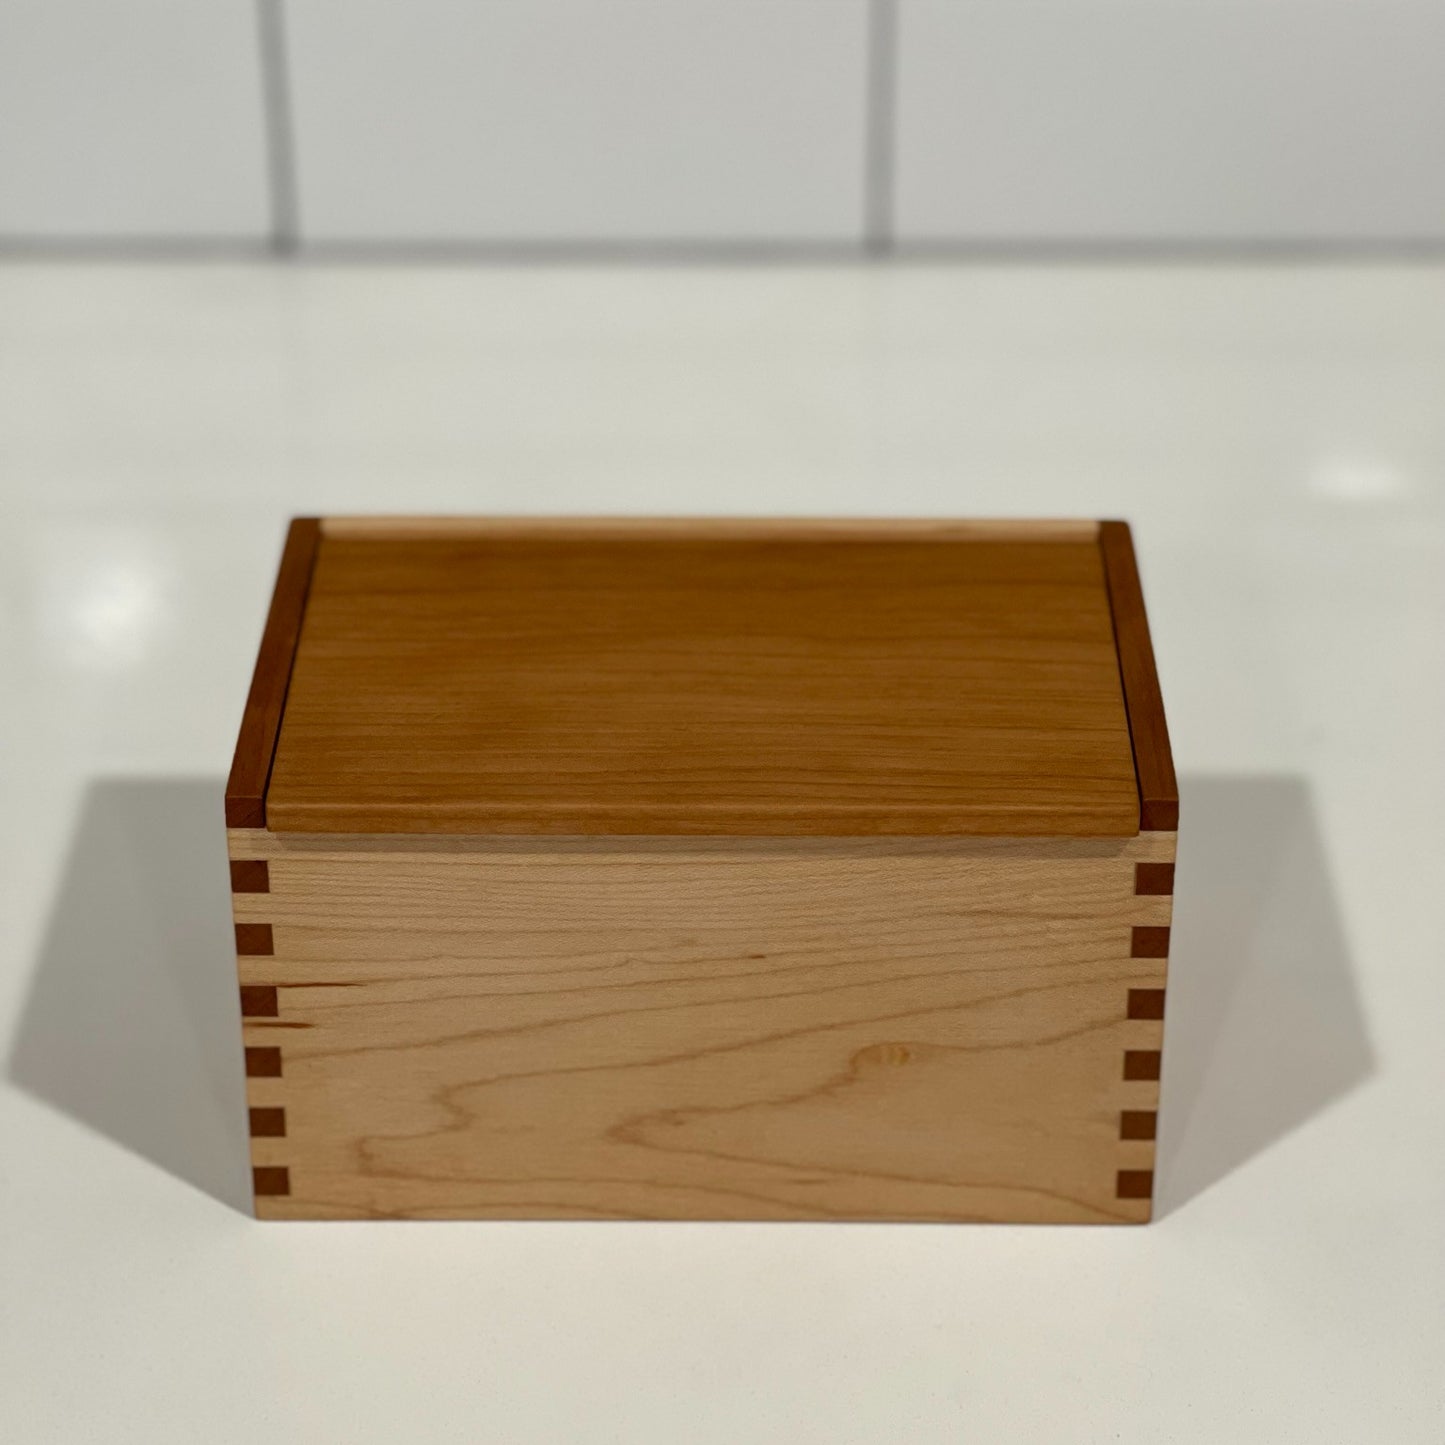 Wood Salt Cellar - Salt Box - Salt Pig - Keepsake Box - Cherry and Maple